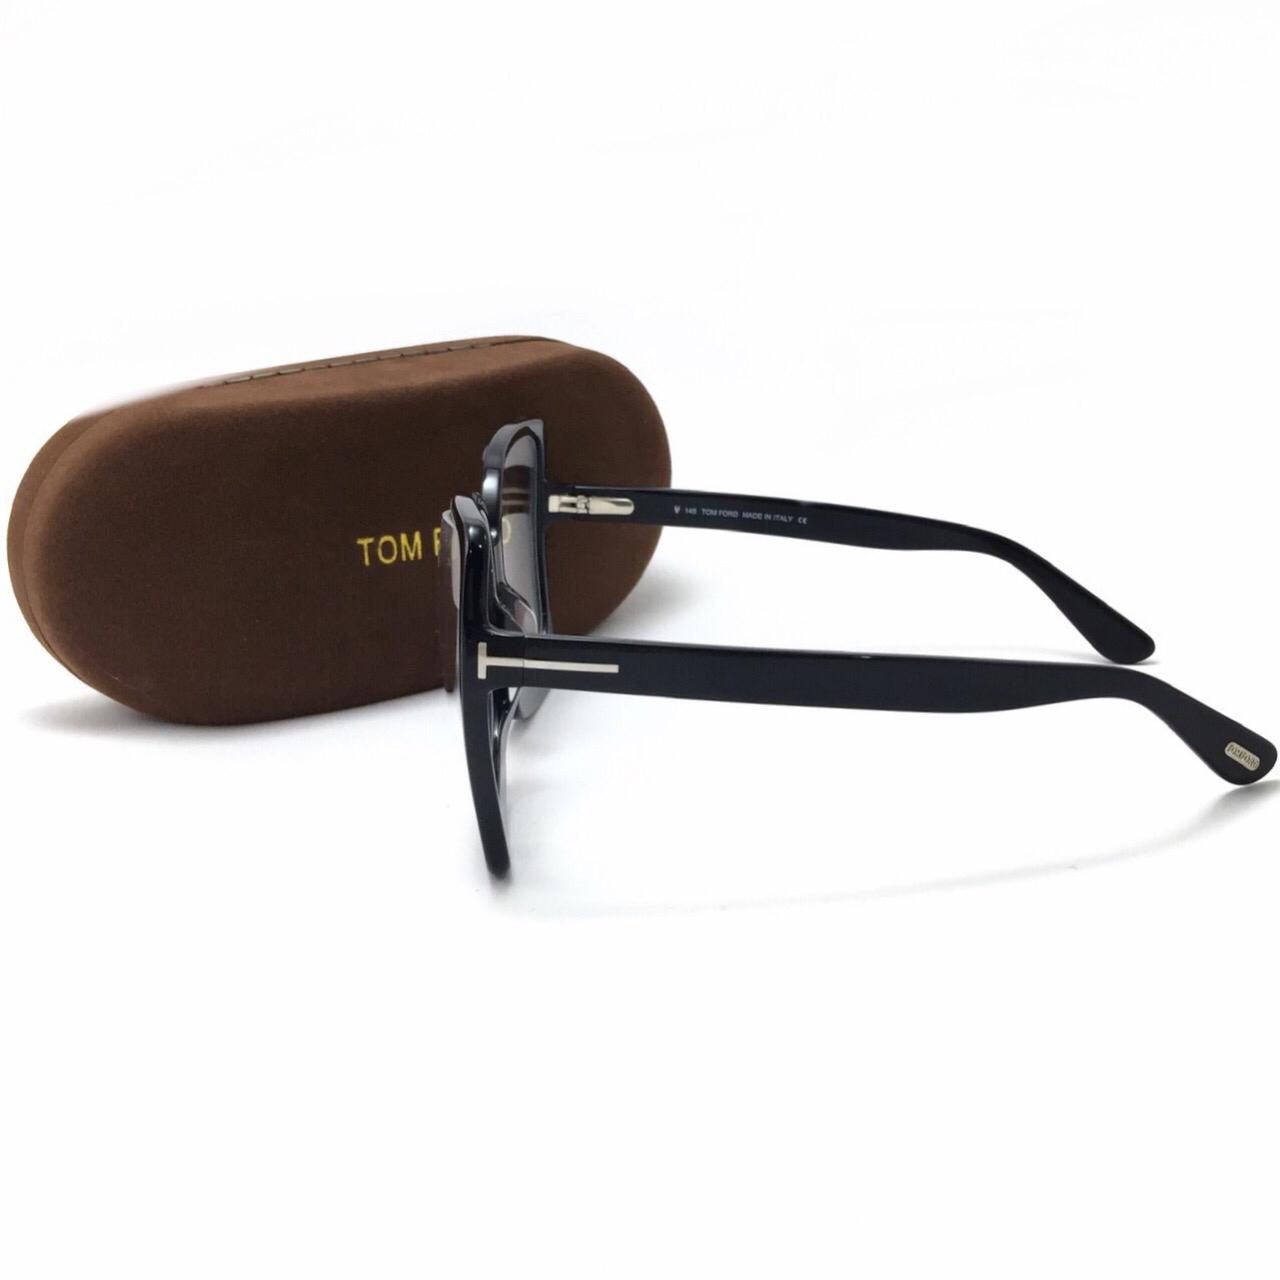 نظارة طبية مستطيلة الشكل من توم فورد TF0618